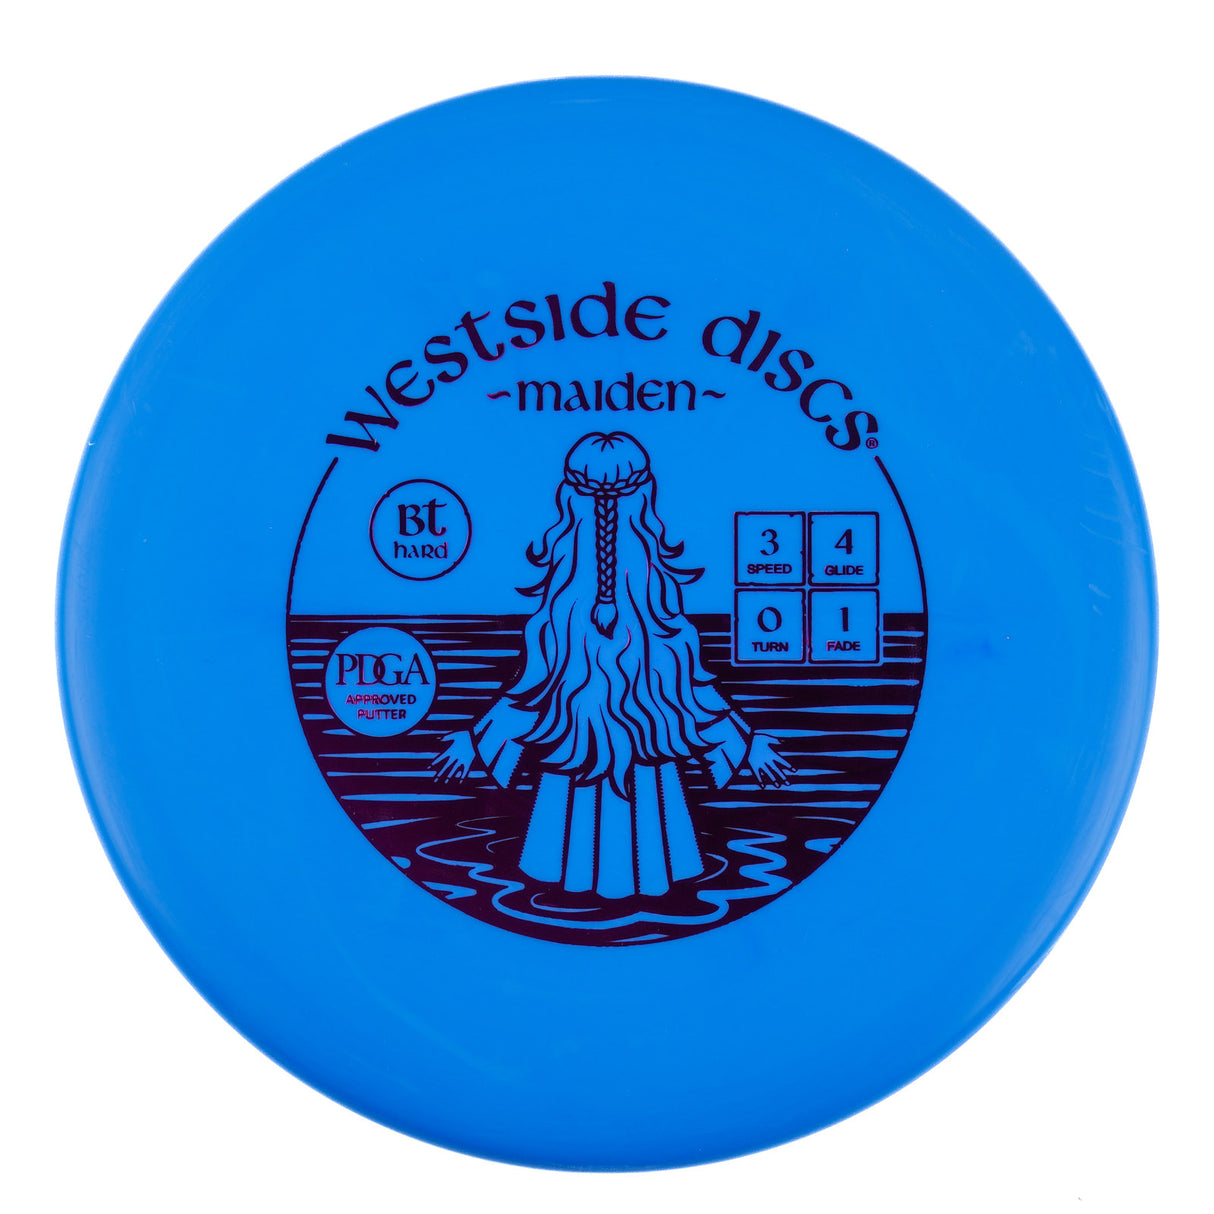 Westside Maiden - BT Hard 174g | Style 0001